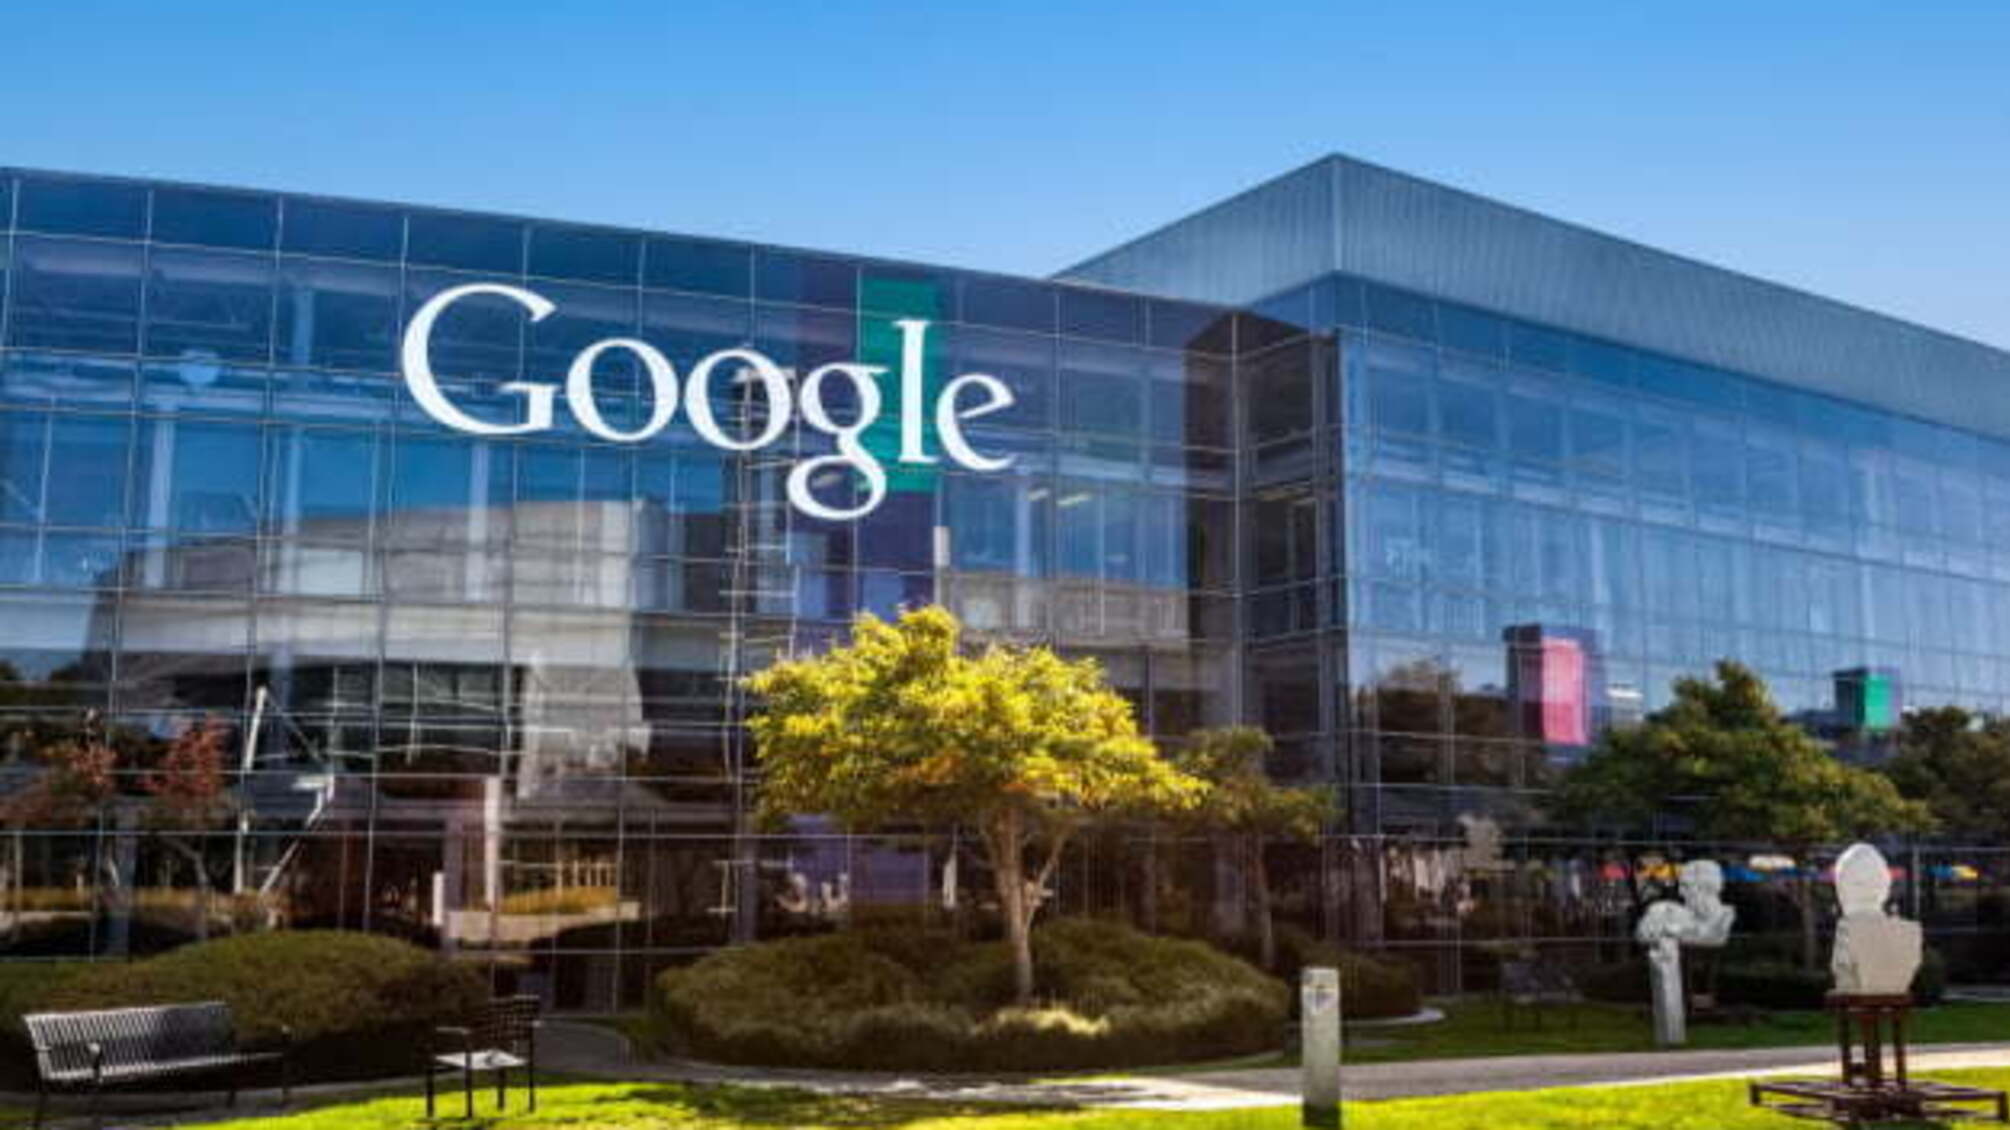 Працівники Google створили першу в історії компанії профспілку